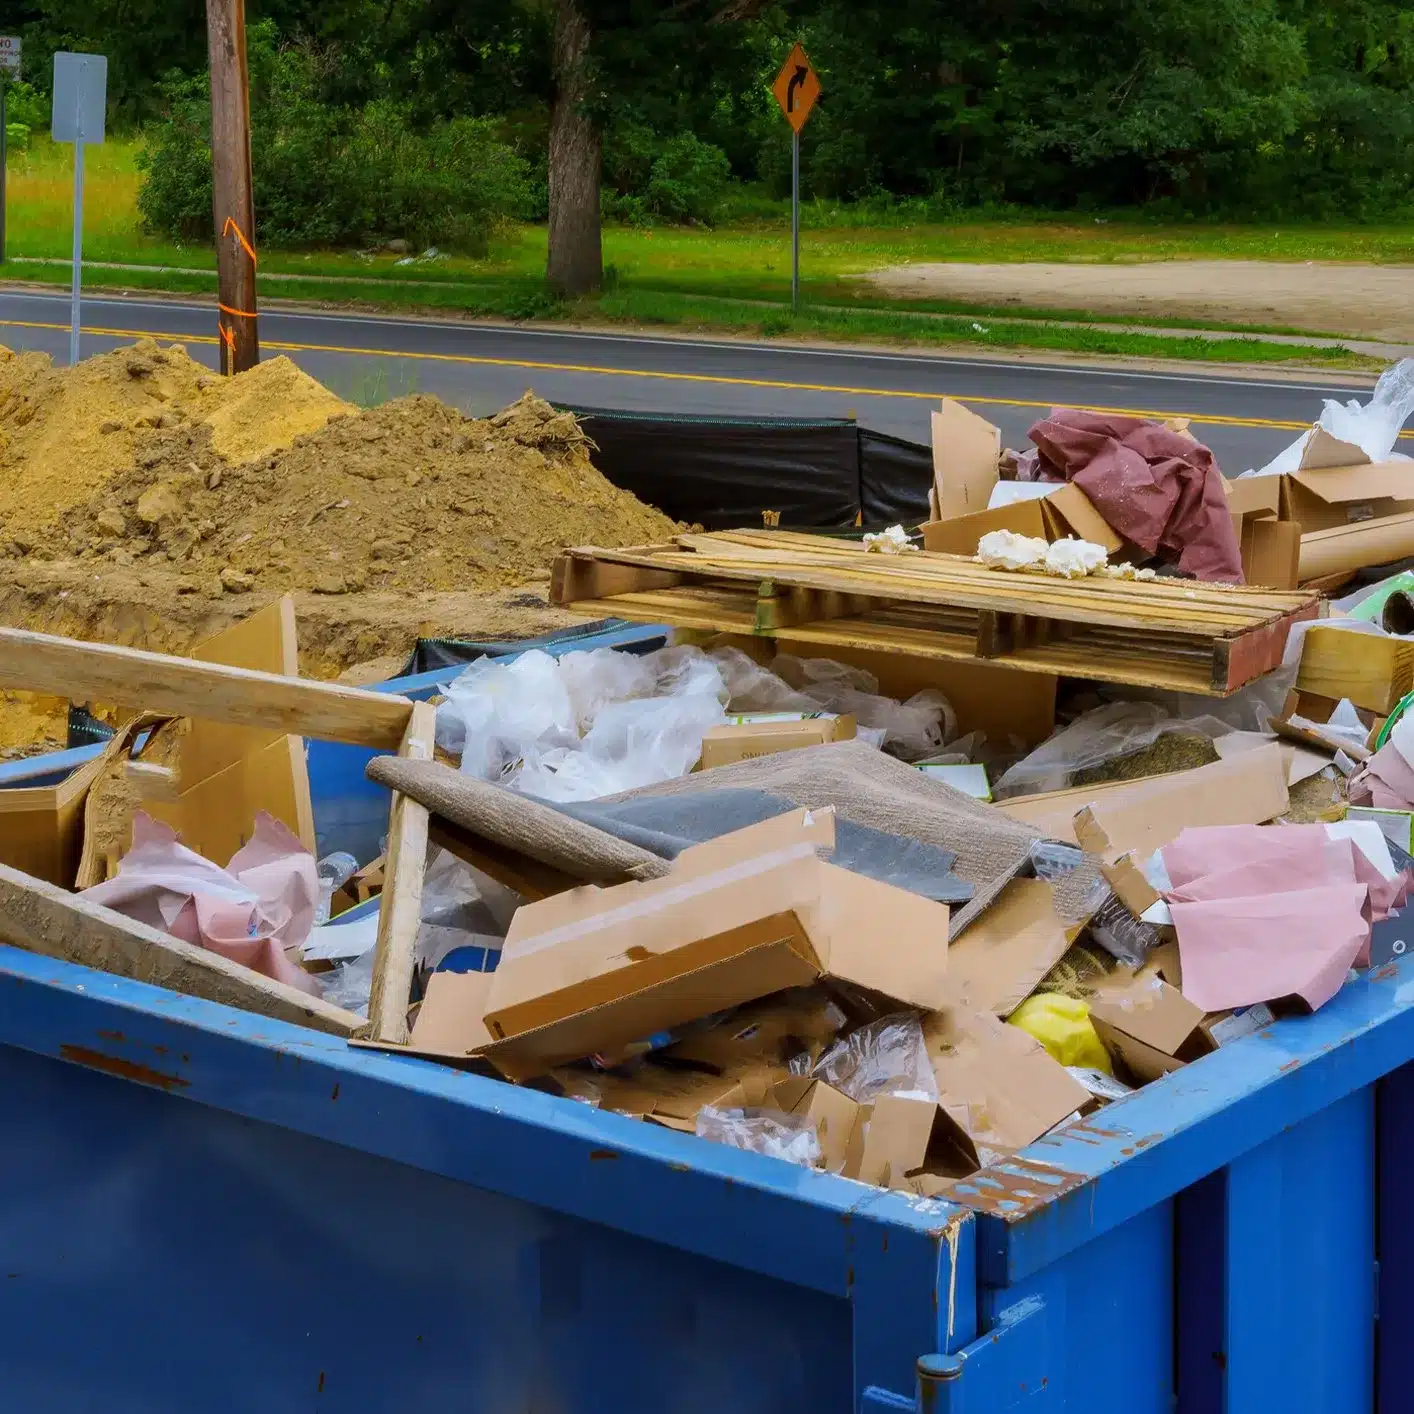 Blue dumpster full of debris